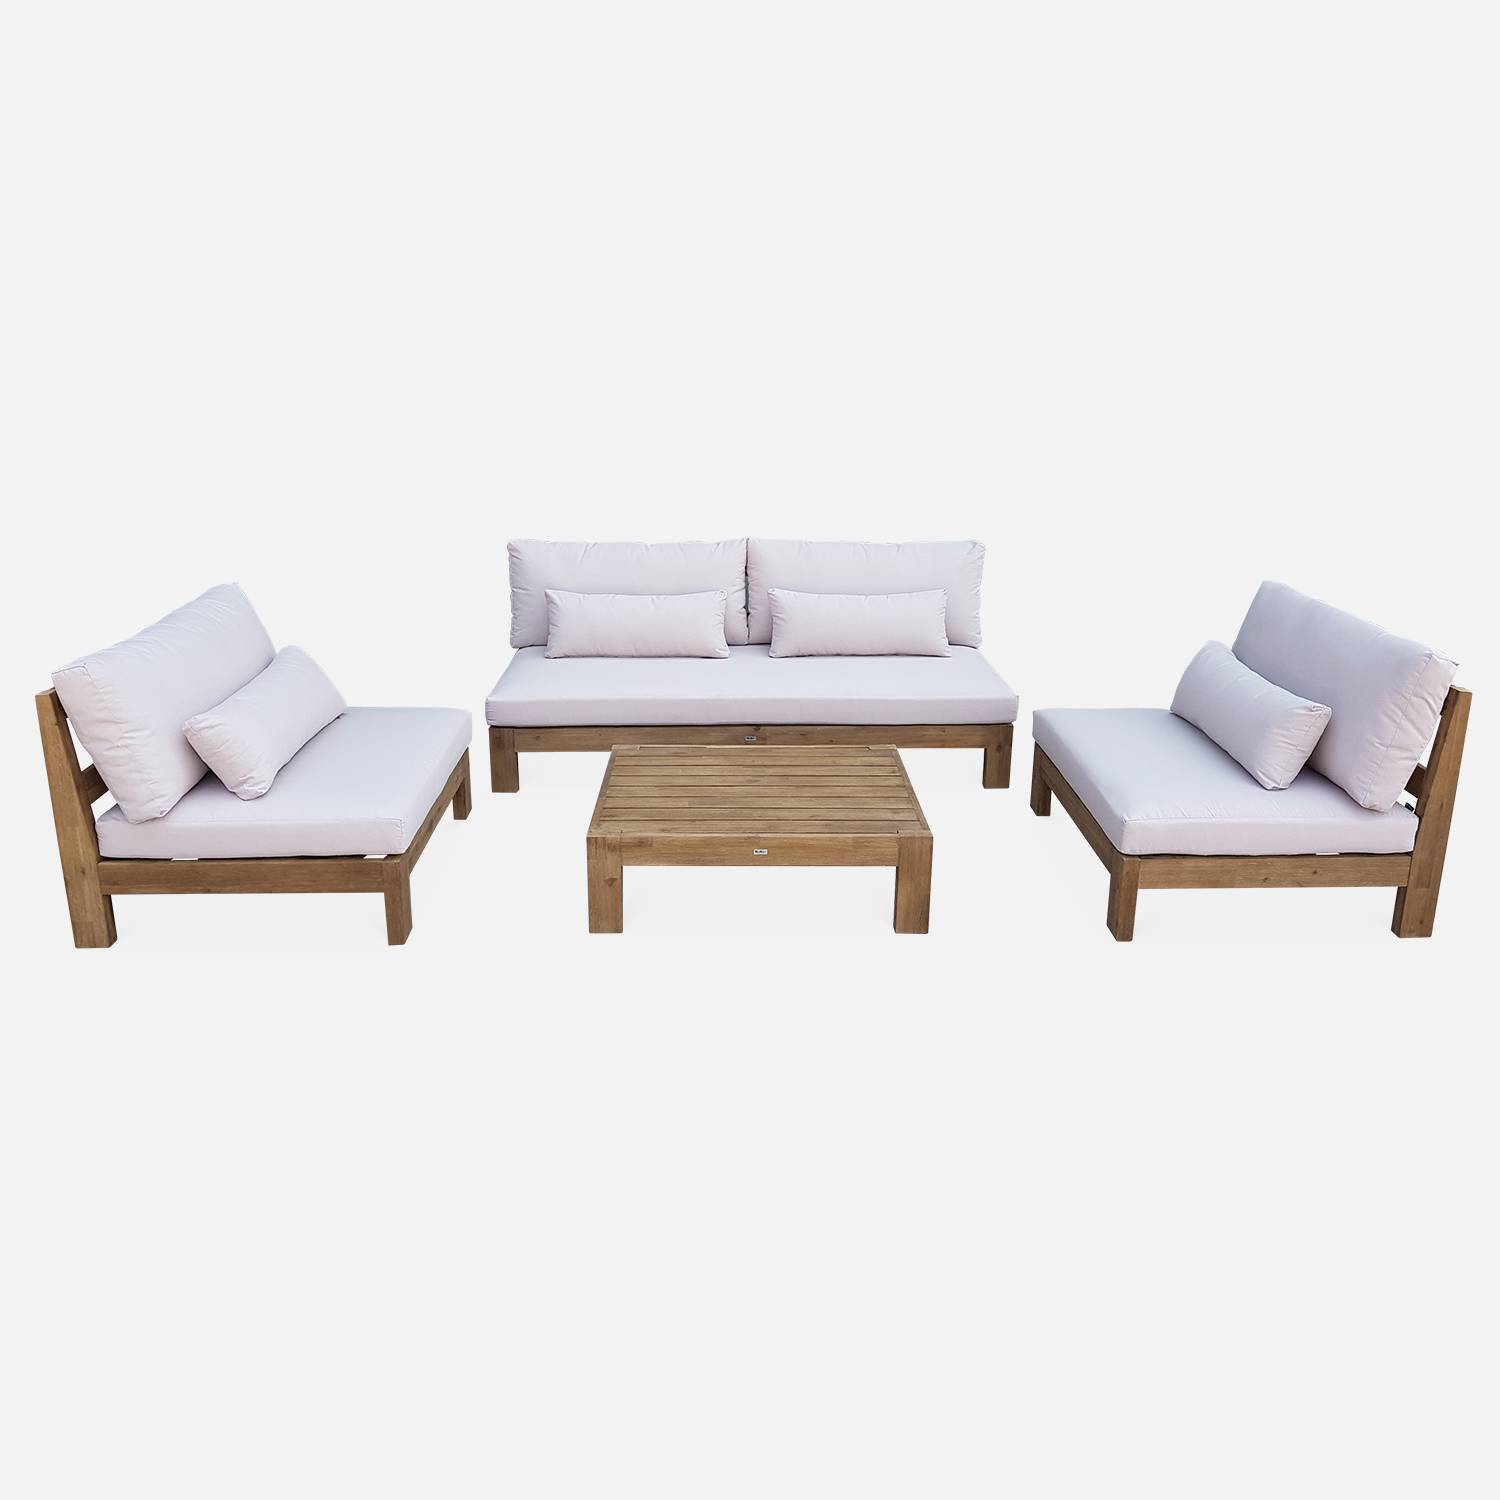 Salon de jardin XXL en bois brossé, effet blanchi – BAHIA – coussins beiges, ultra confortable, 5 places Photo3